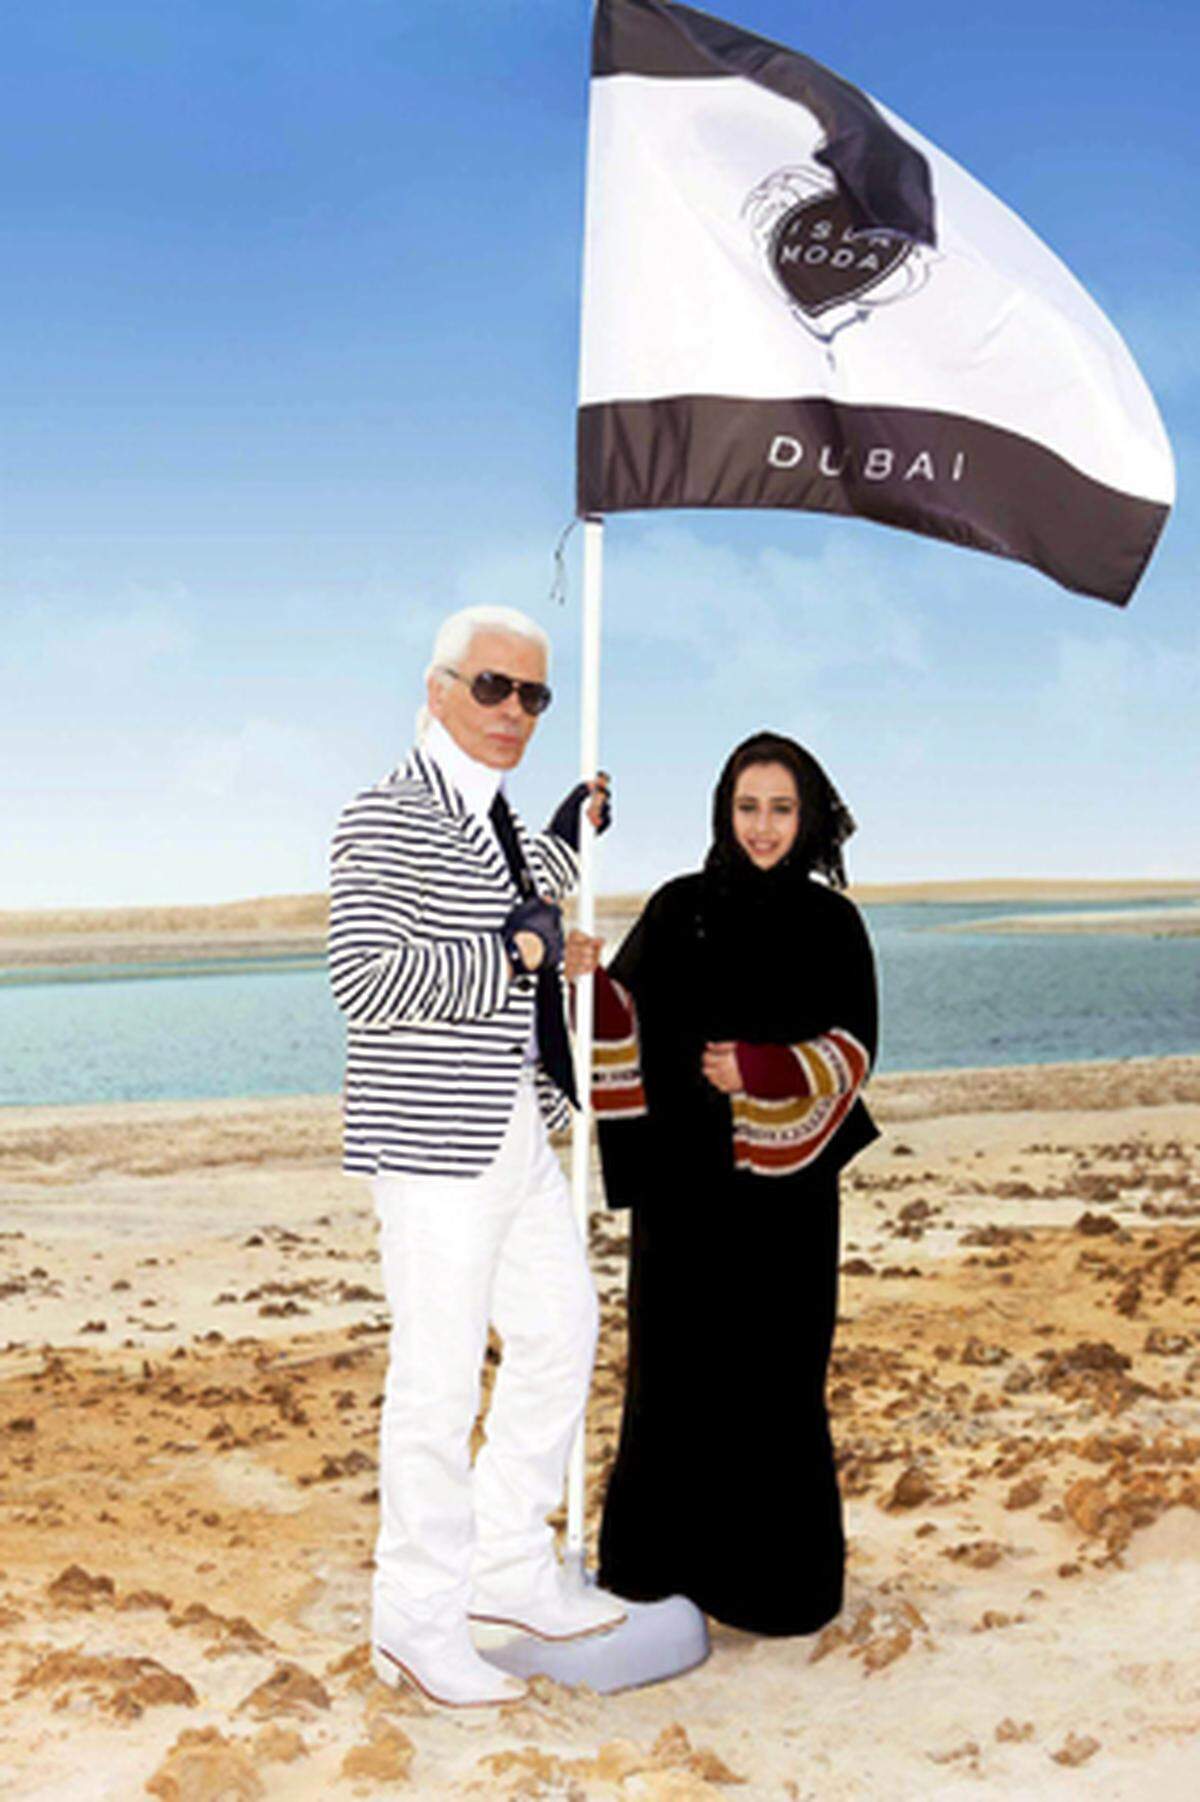 Mode ist nicht alles, nebenbei entwirft er auch Interieur. In Dubai gestaltet Karl Lagerfeld zur Zeit 80 Luxusvillen.